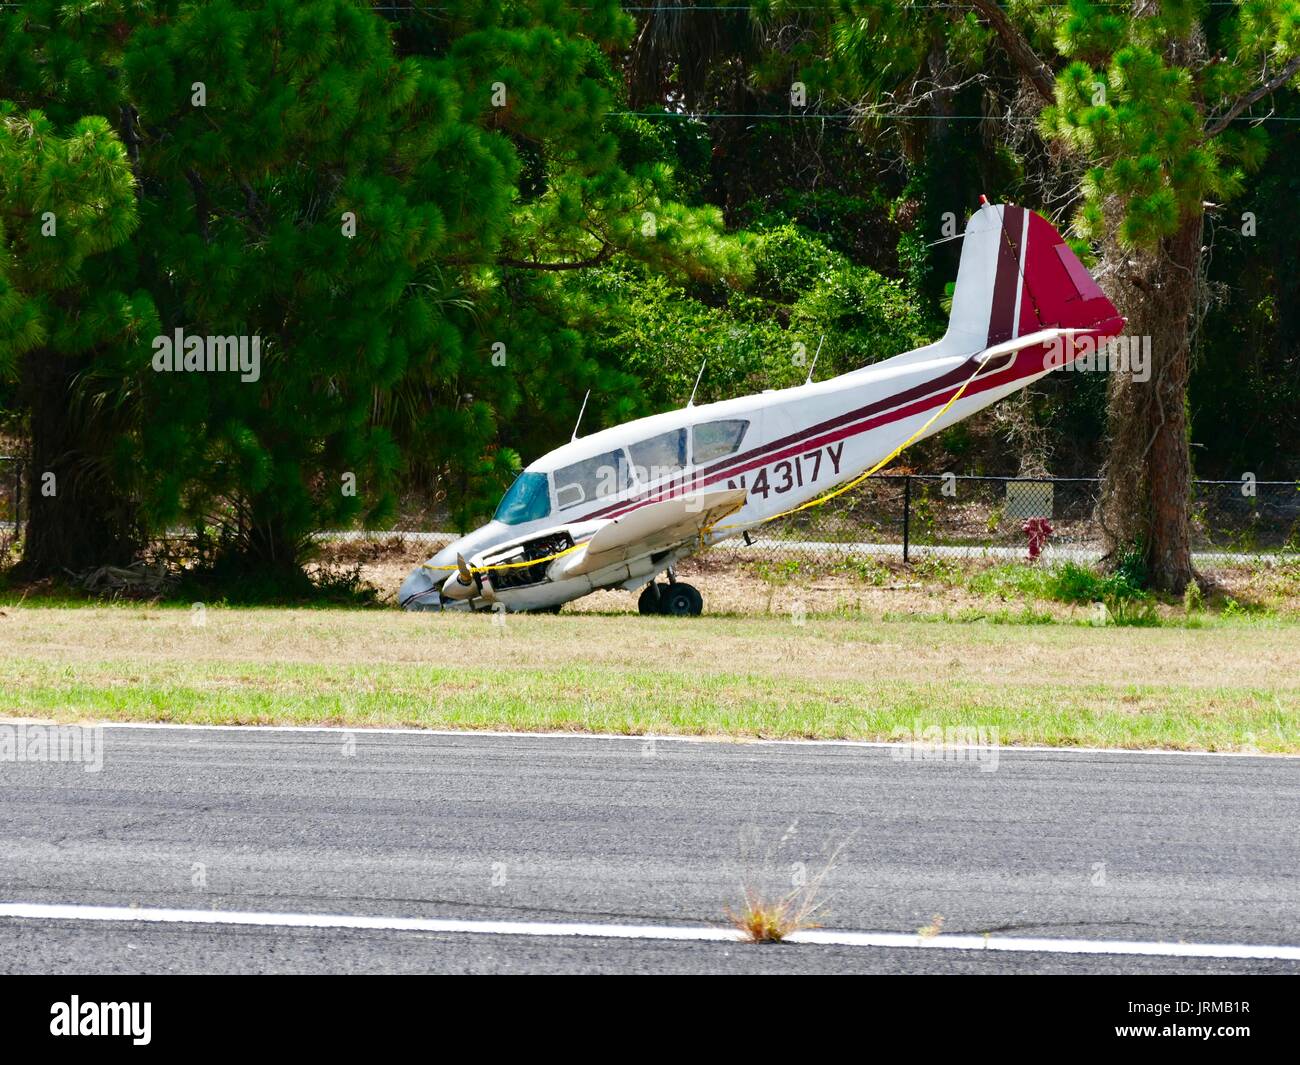 Piper PA 23 160 Apache beschädigt Flugzeuge, Runway overrun am 16. Juni 2017, keine Verletzungen, zweimotorige kleines Flugzeug, die Nase nach unten. Cedar Key, Florida, USA. Stockfoto